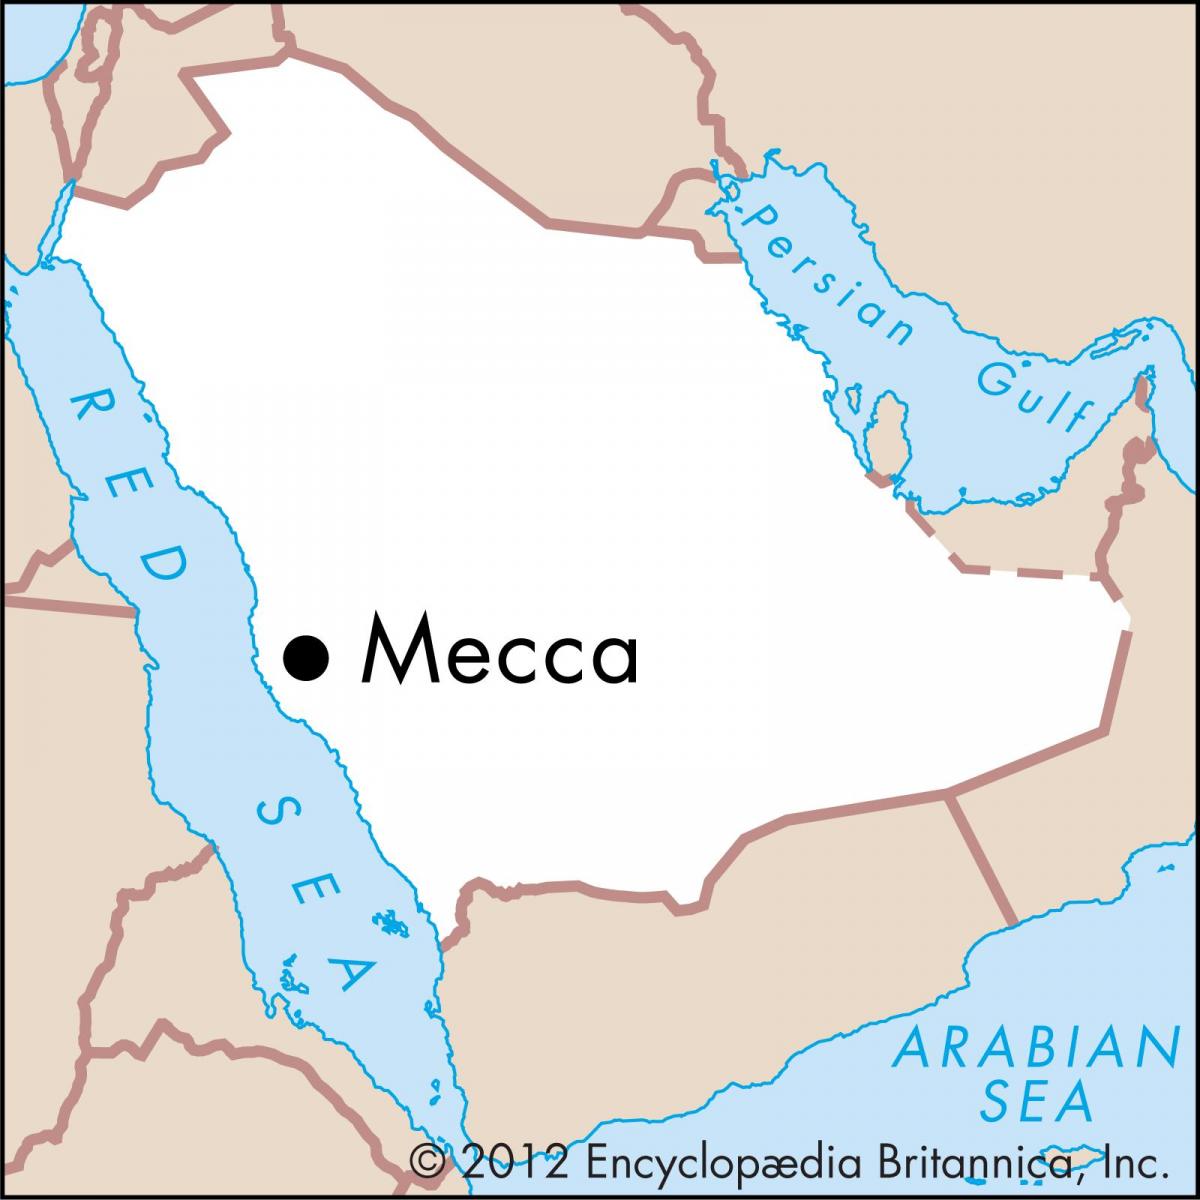 χάρτης της masarat βασίλειο 3 Μέκκα